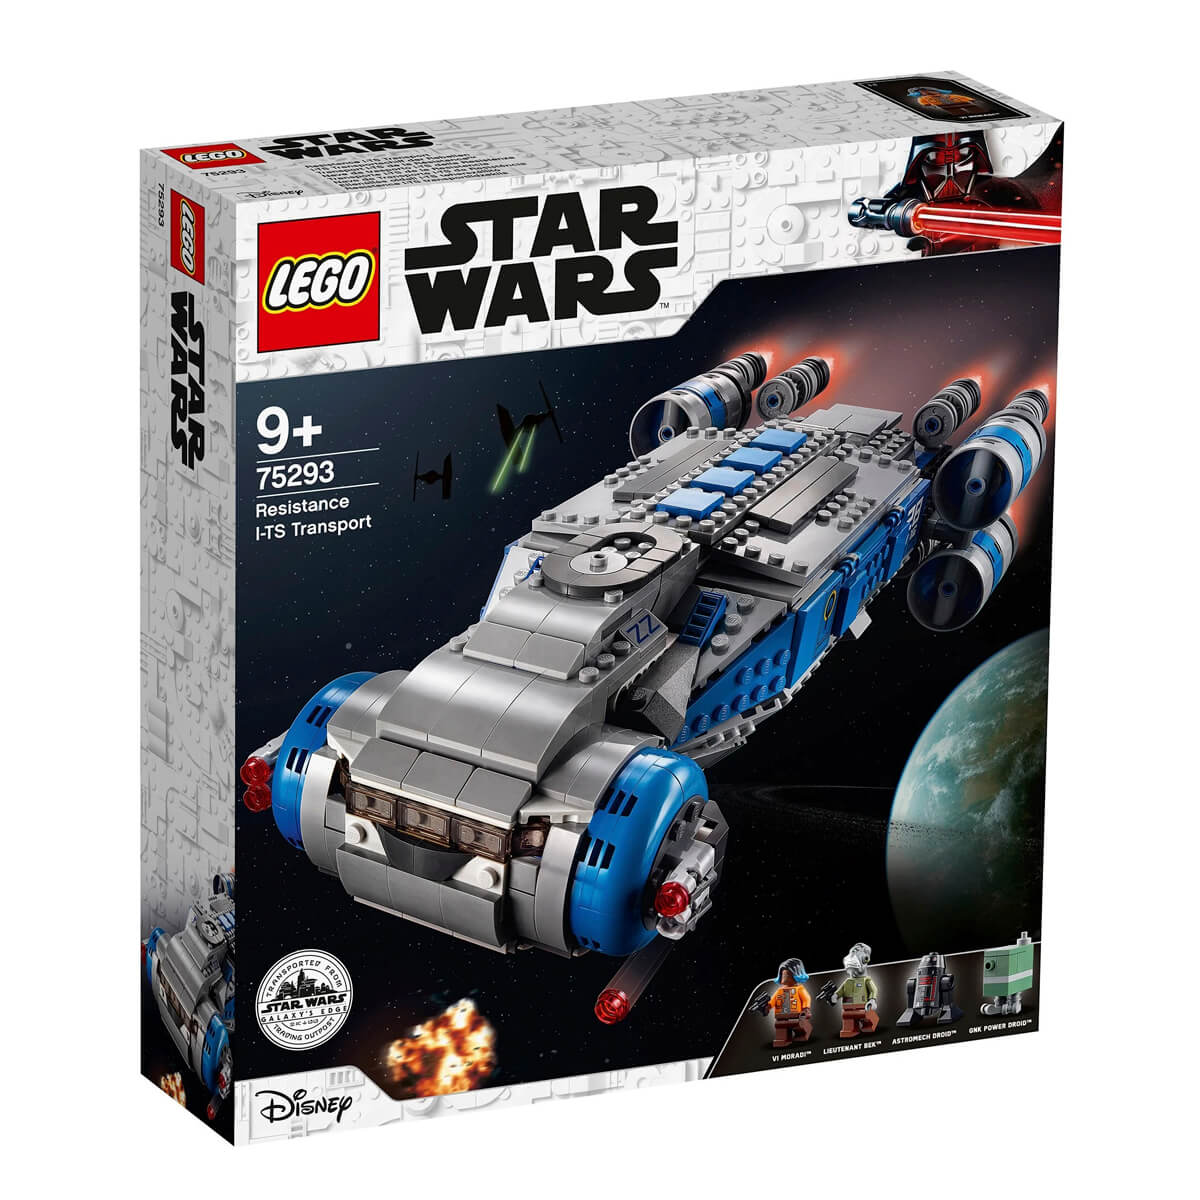 Конструктор LEGO Star Wars 75293 Транспортный корабль Сопротивления I-TS lego star wars 75176 транспортный корабль сопротивления 294 дет